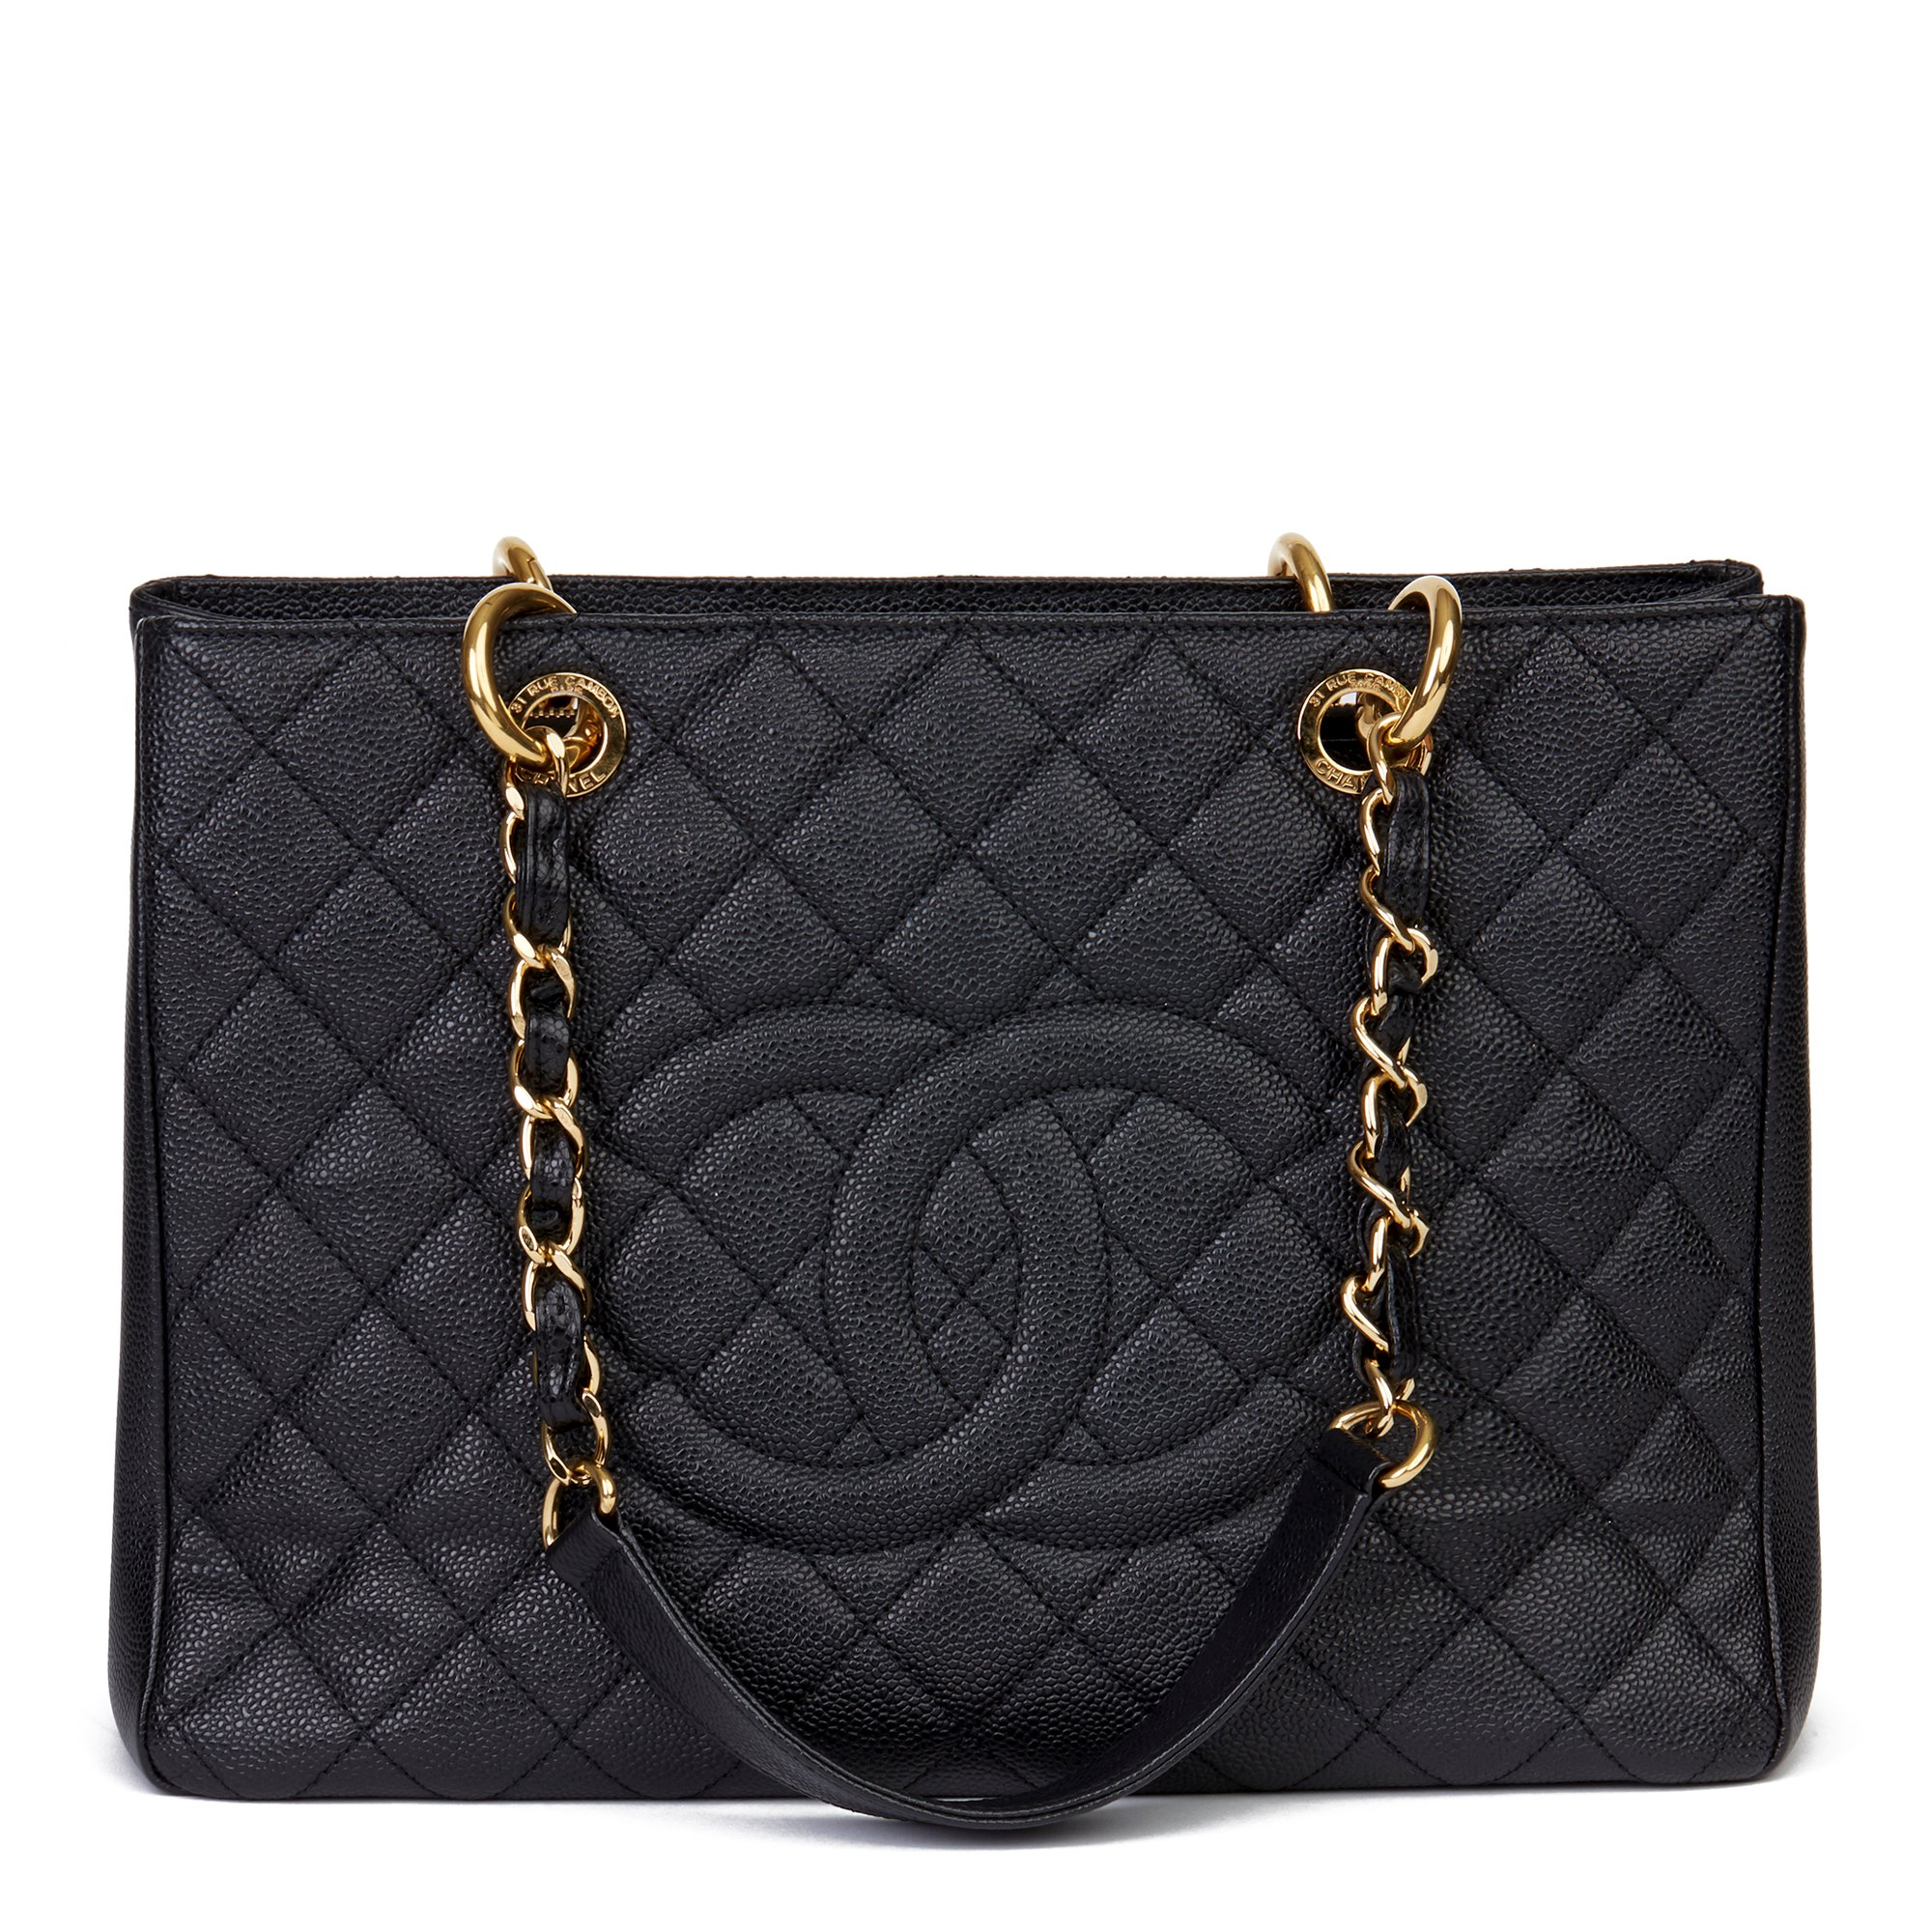 Chanel Handbags Online Shopping | semashow.com